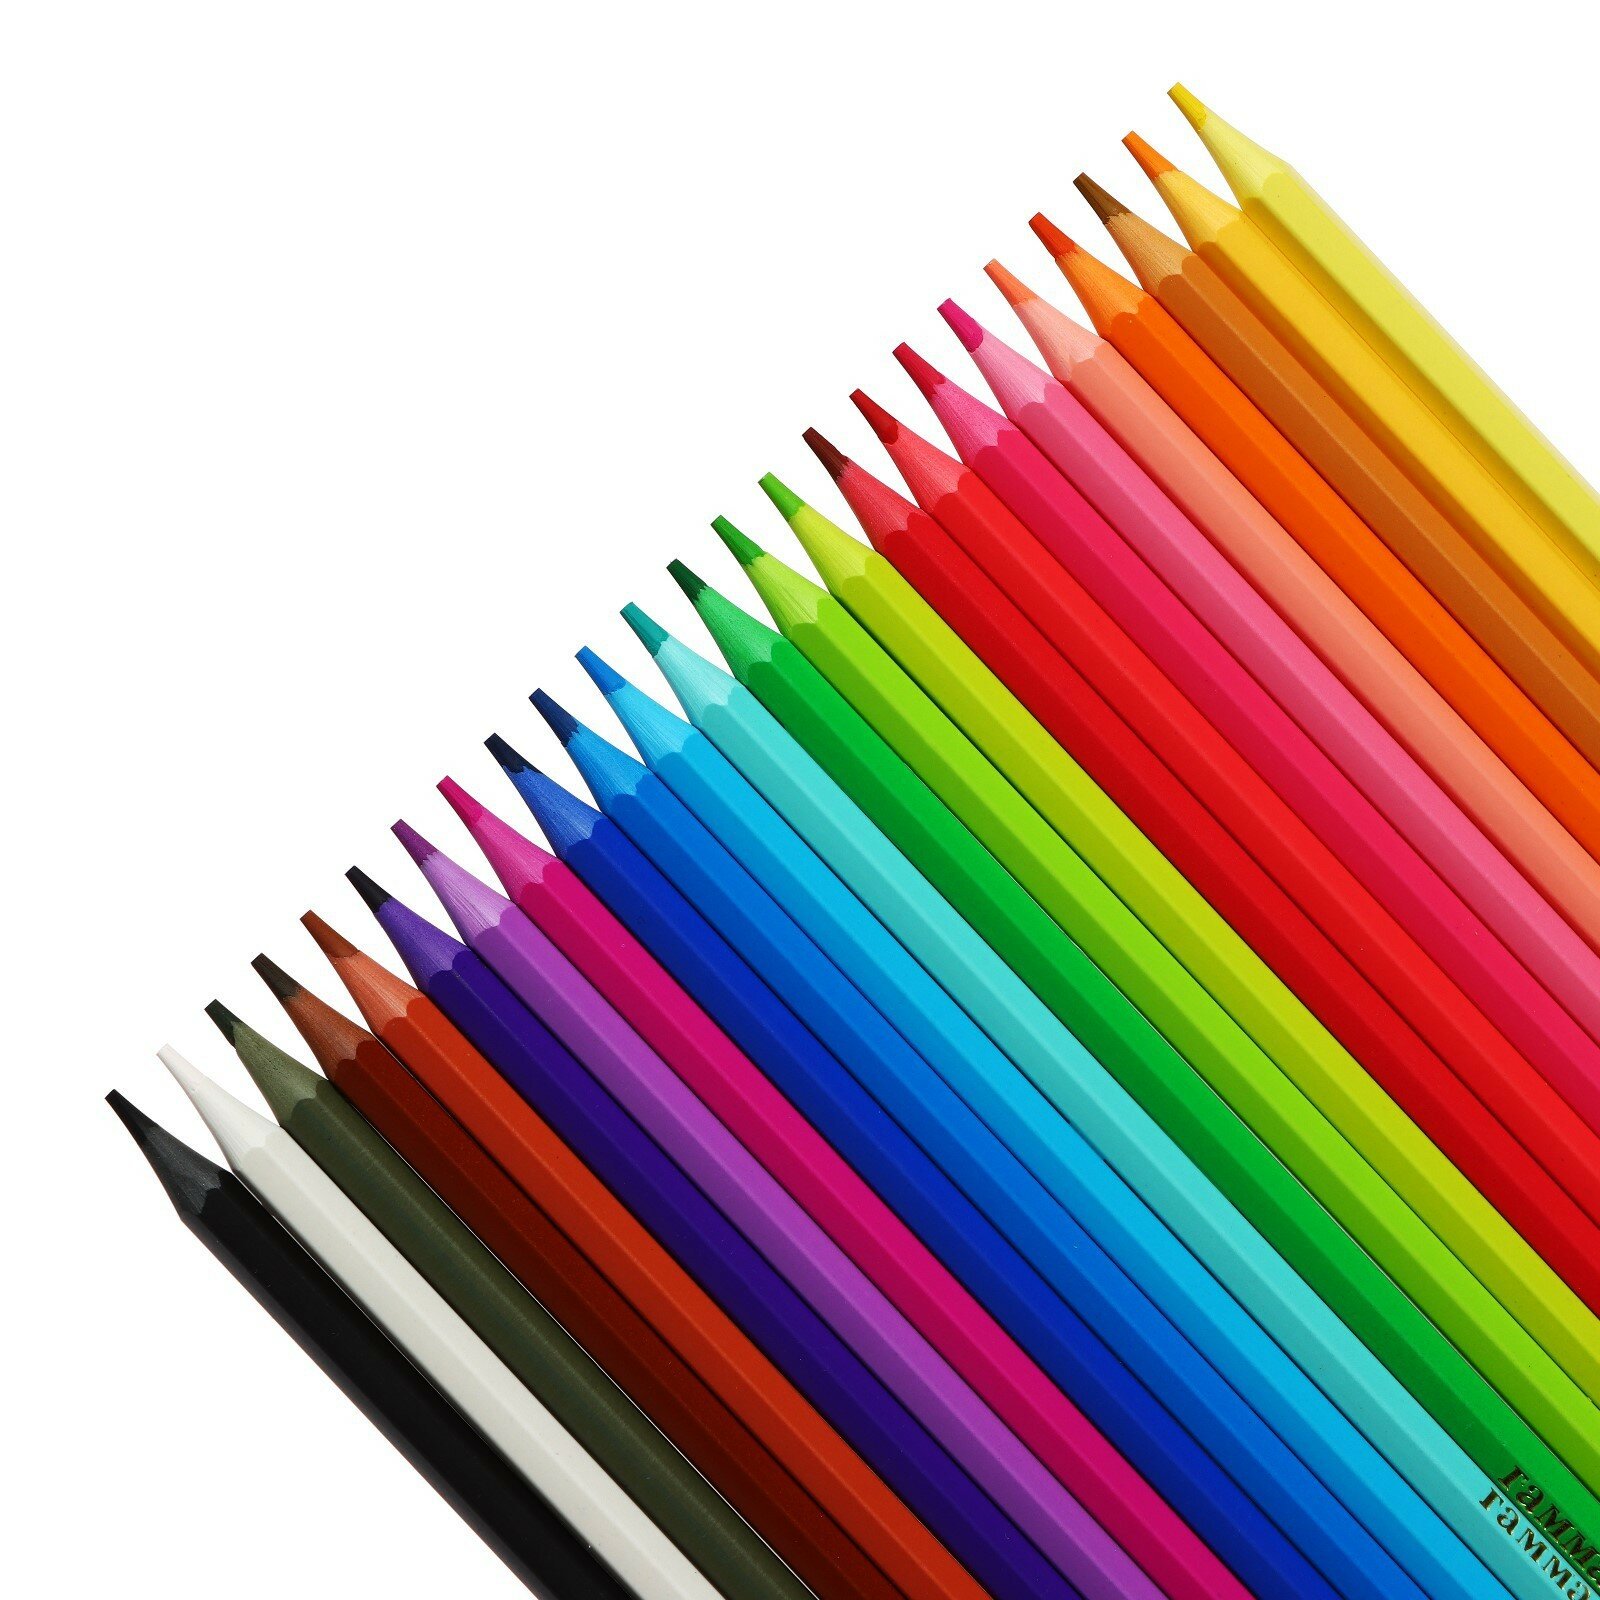 Цветные карандаши для школы 24 цвета, пластиковые шестигранные / Набор цветных карандашей для рисования школьный Гамма "Мультики"